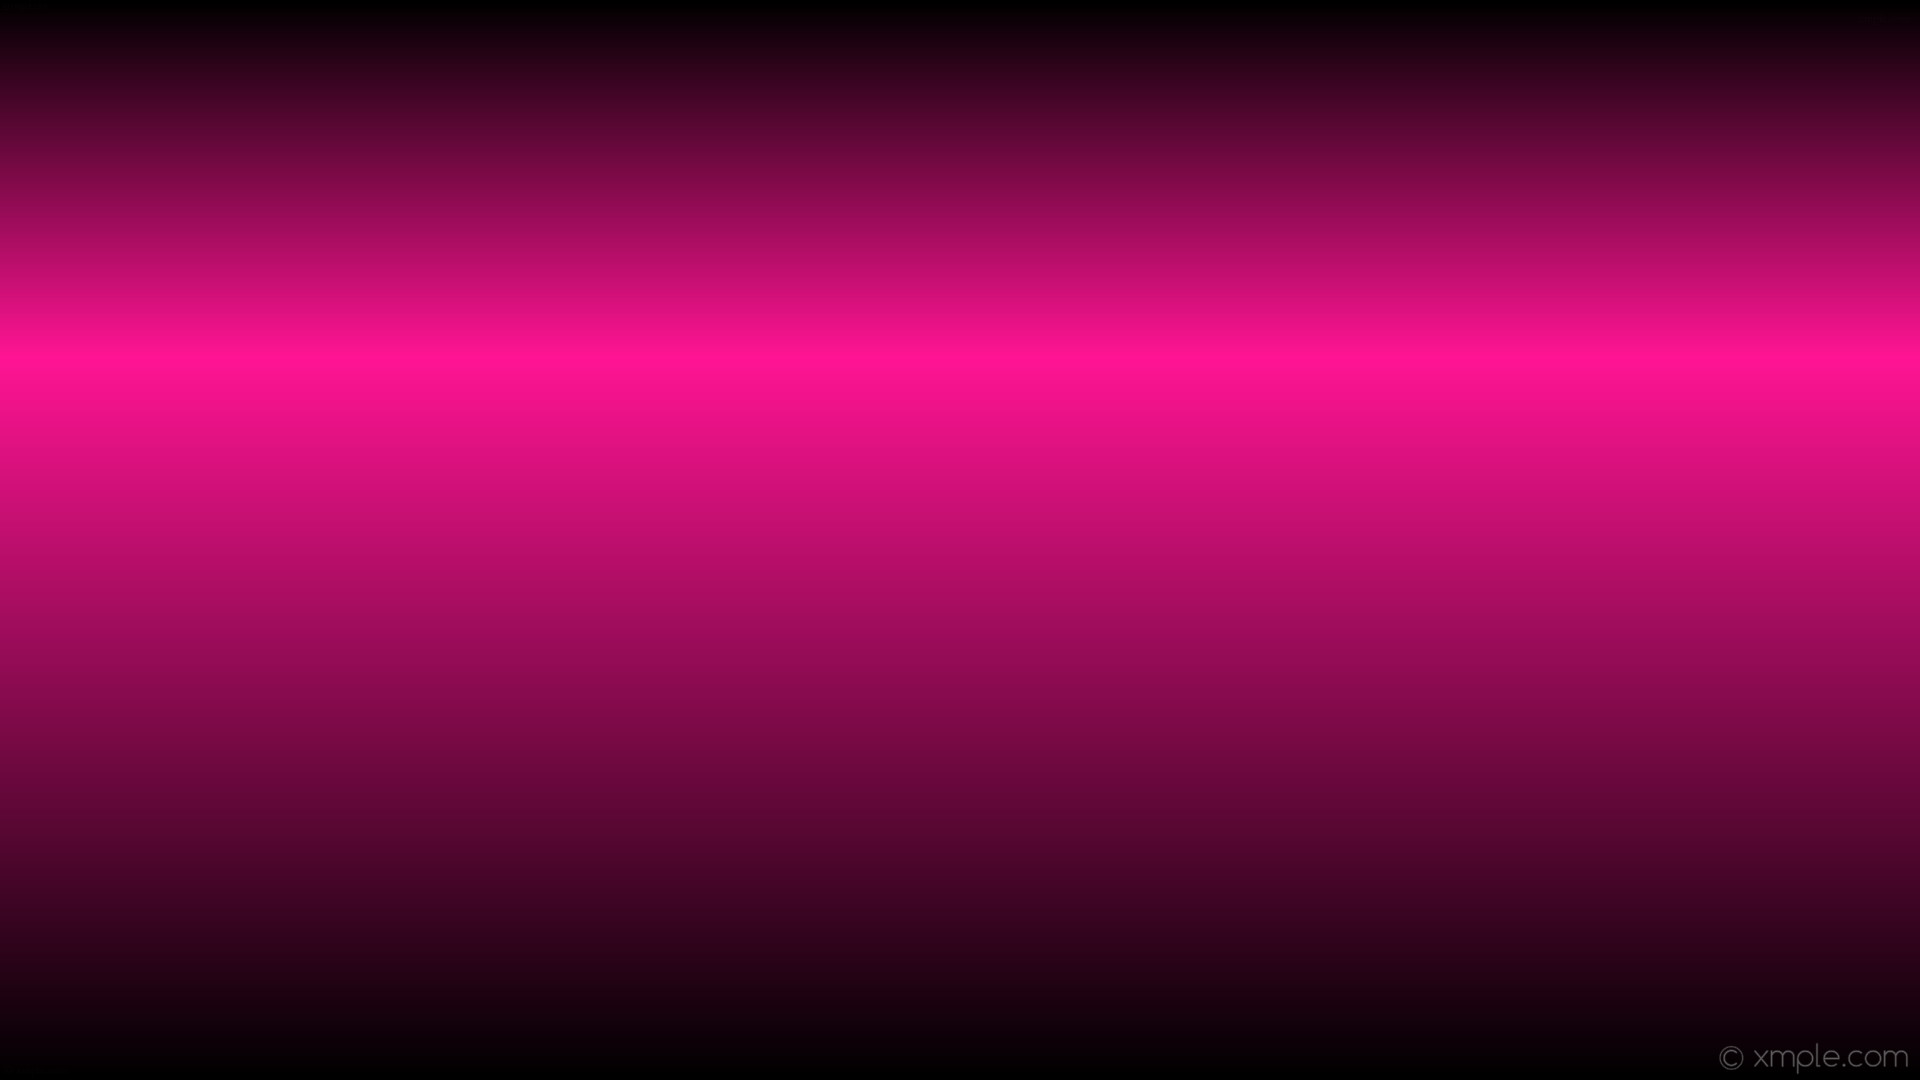 wallpaper pink black linear gradient highlight deep pink #000000 #ff1493  270Â° 67%